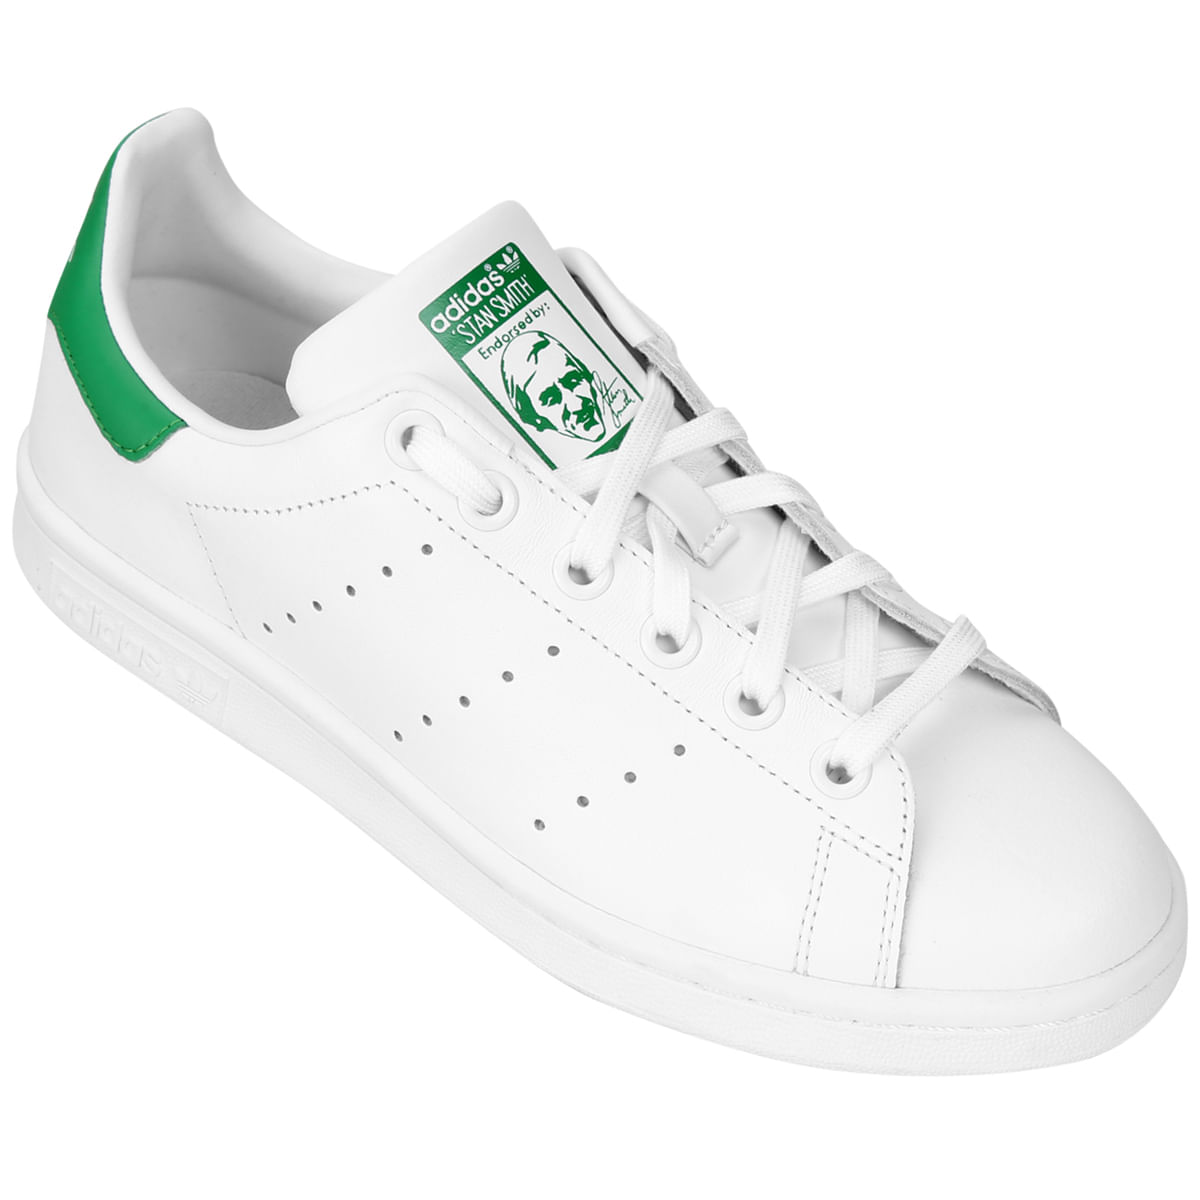 adidas verde e branco